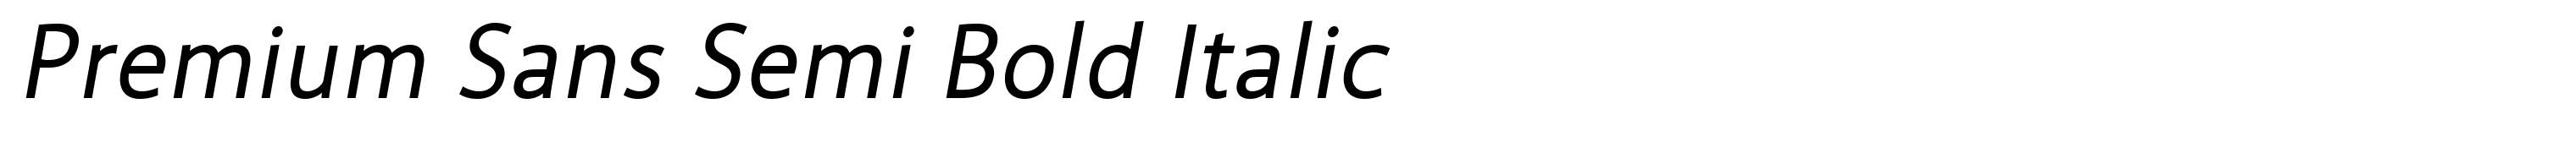 Premium Sans Semi Bold Italic